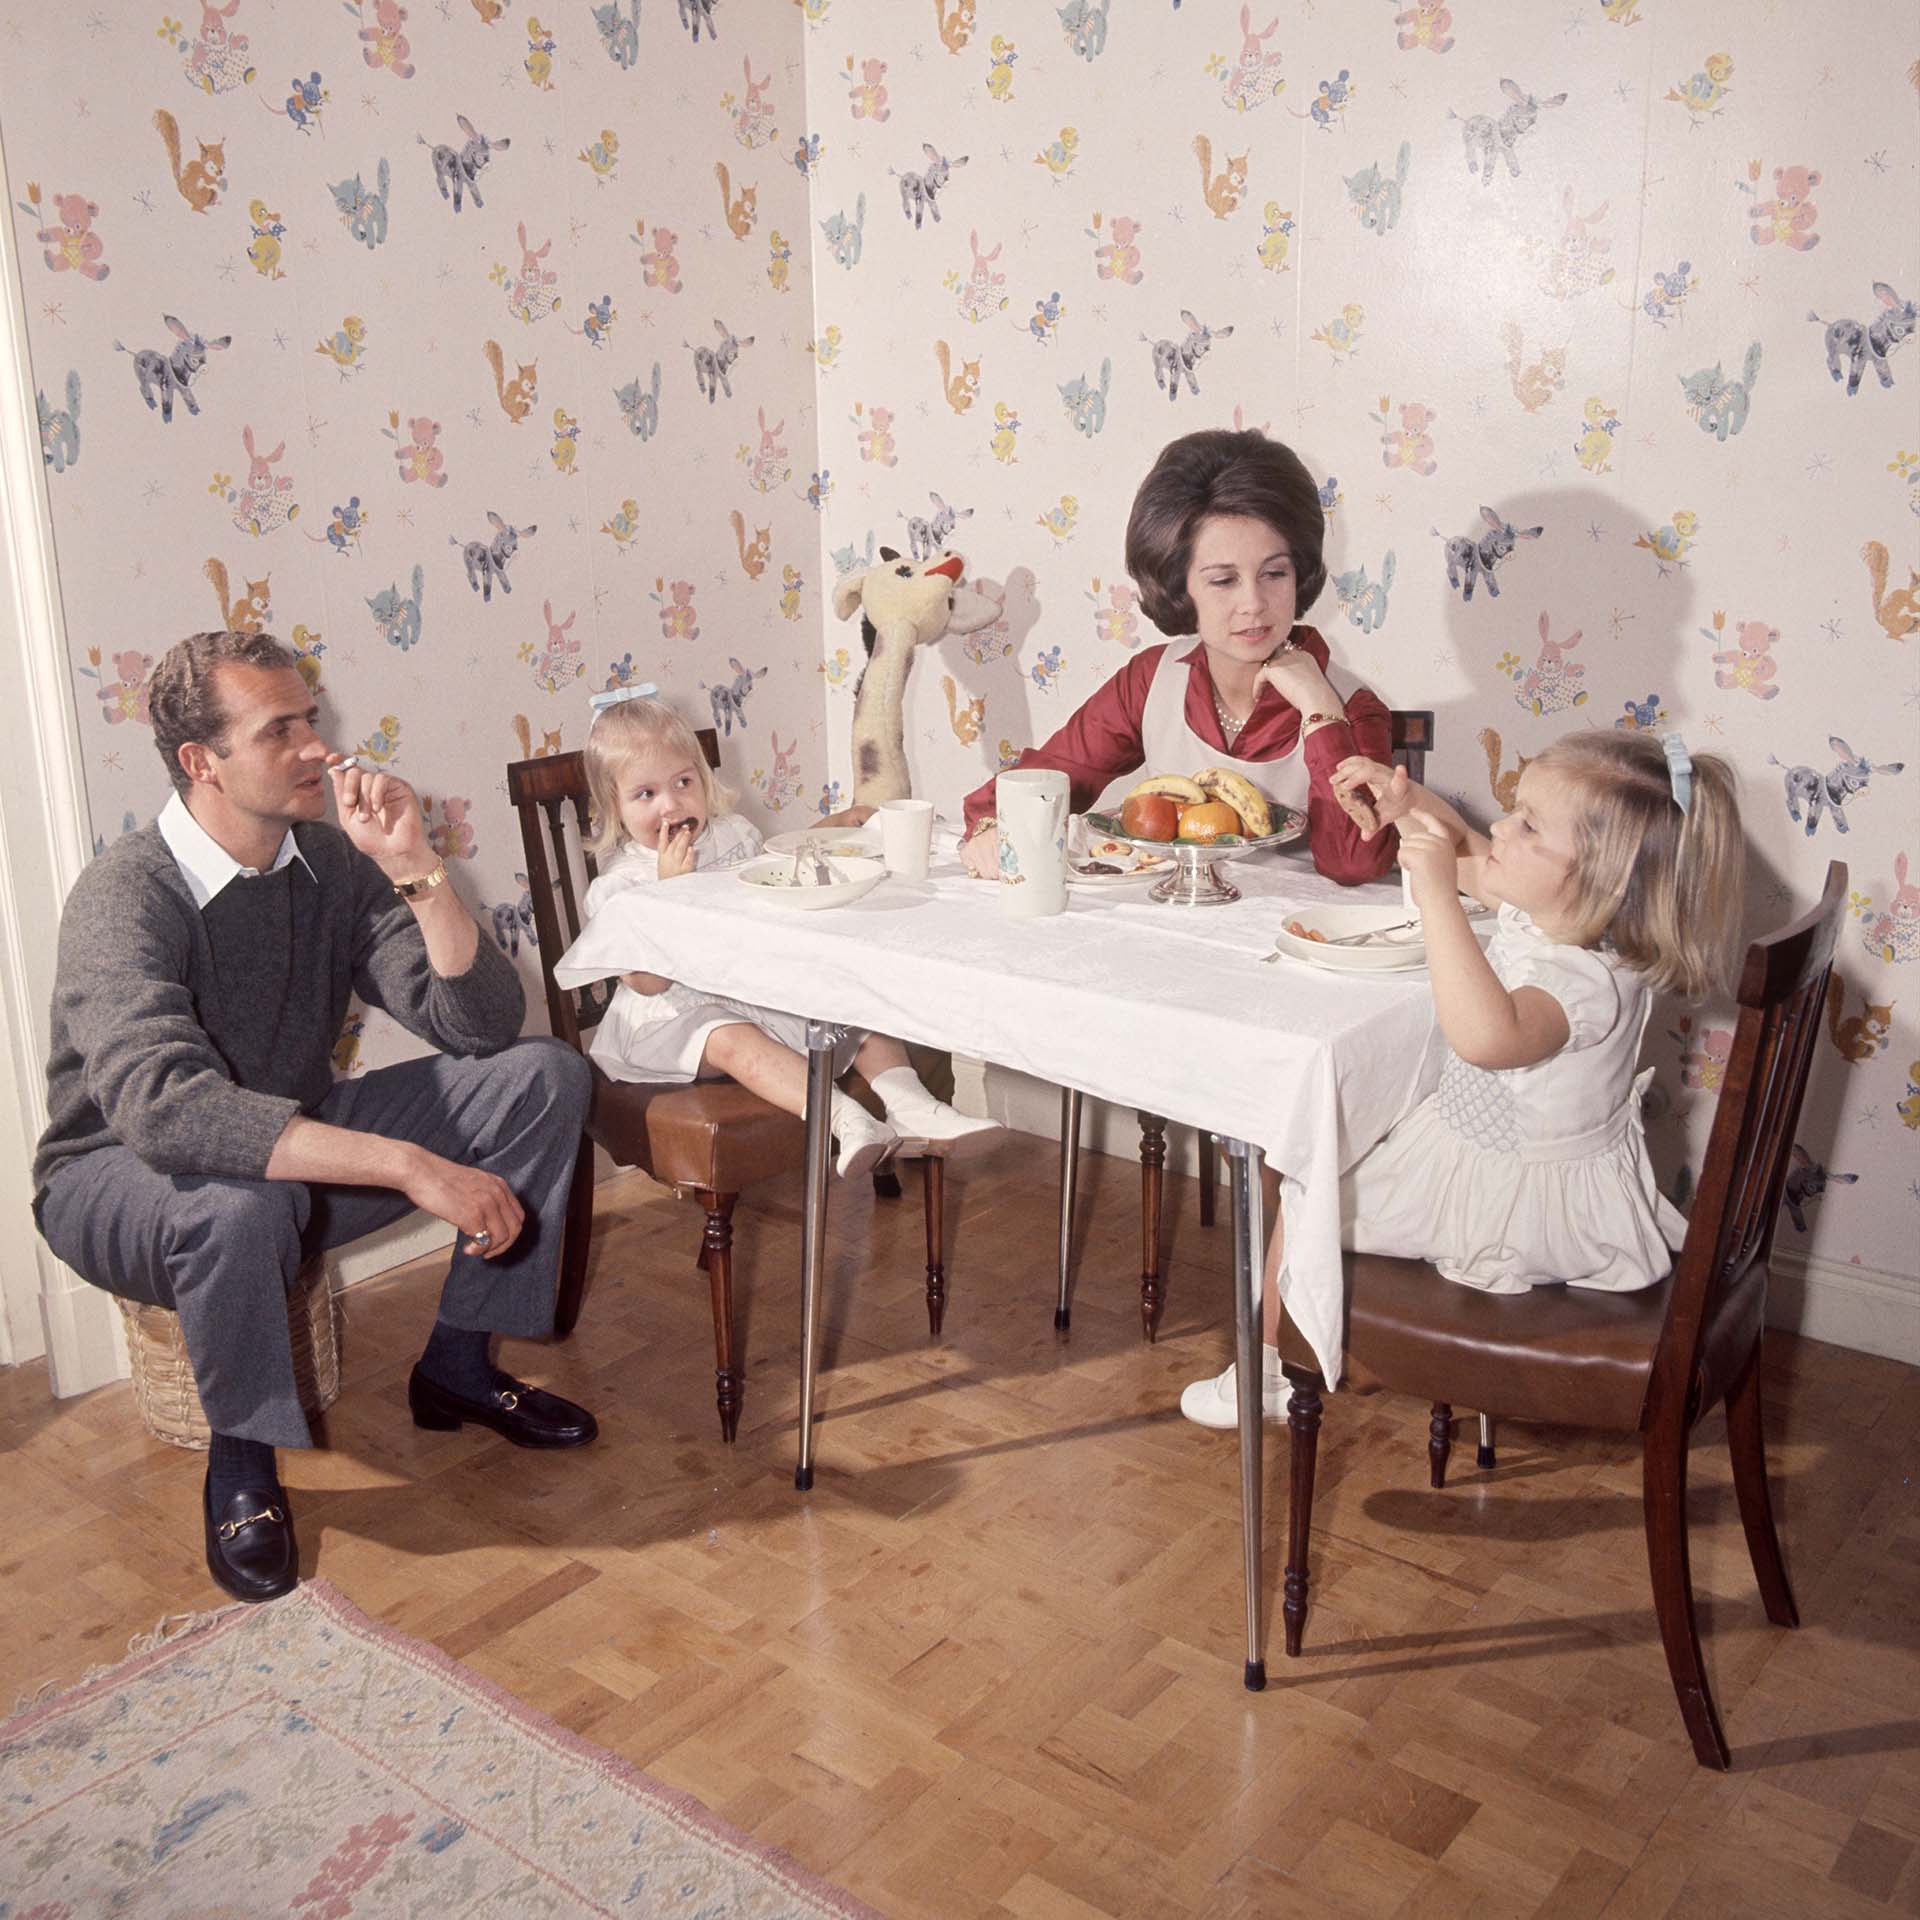 Imágenes de la vida en familia cuando aún Felipe no había nacido (Shutterstock)